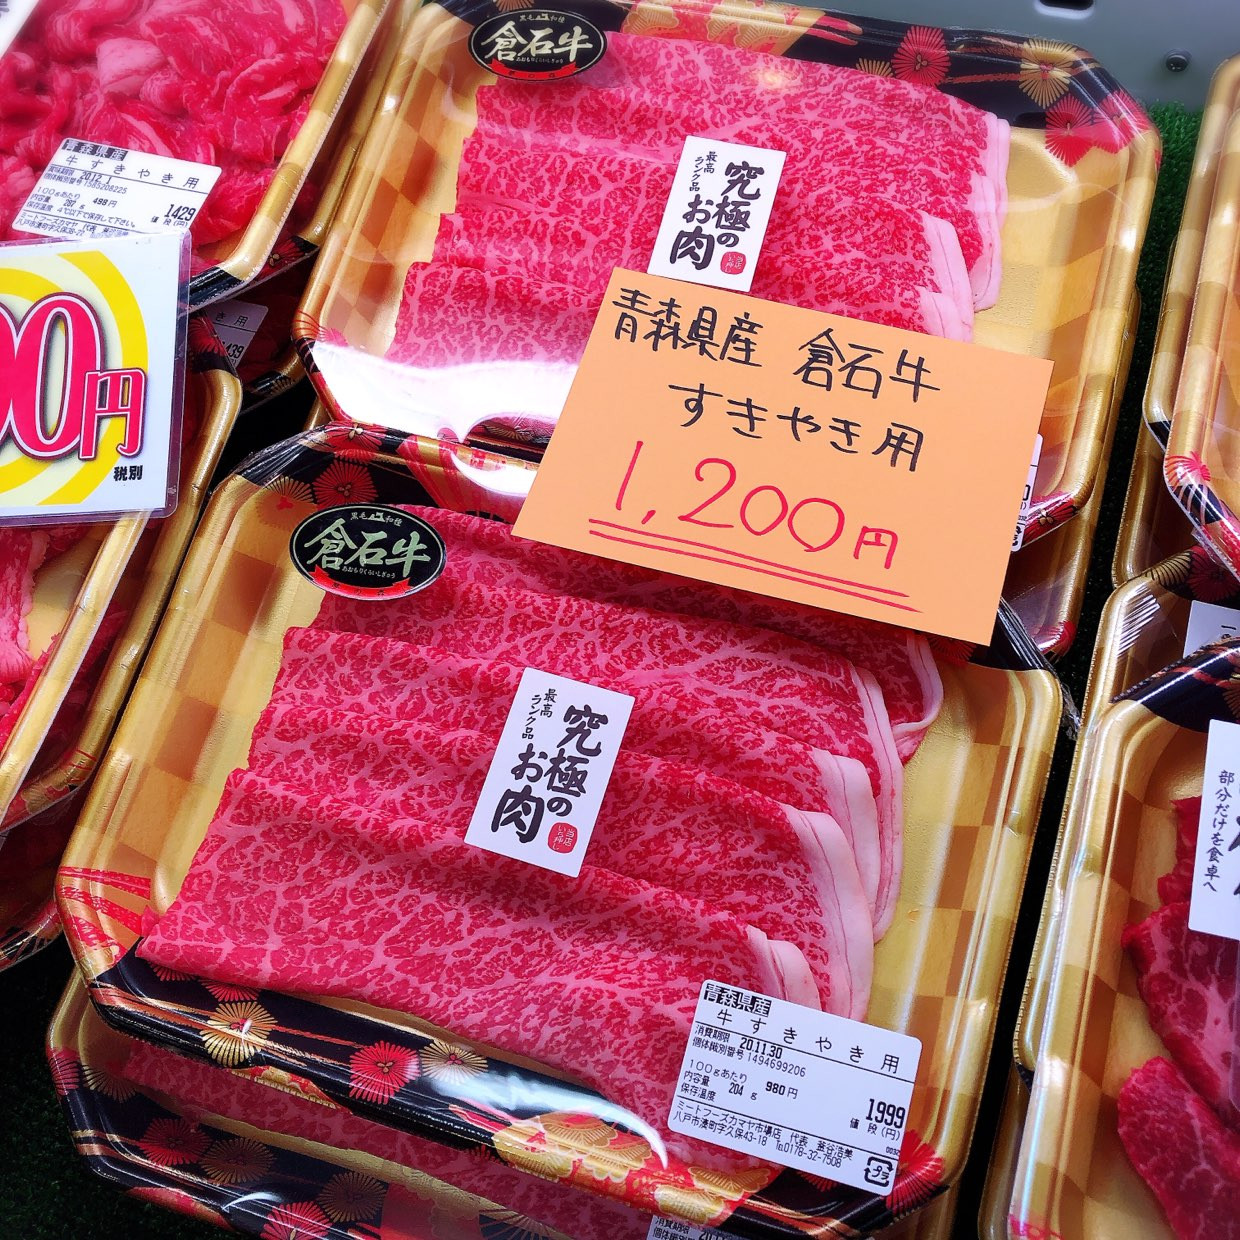 本日は青森県産倉石牛すき焼き用がお買得です。